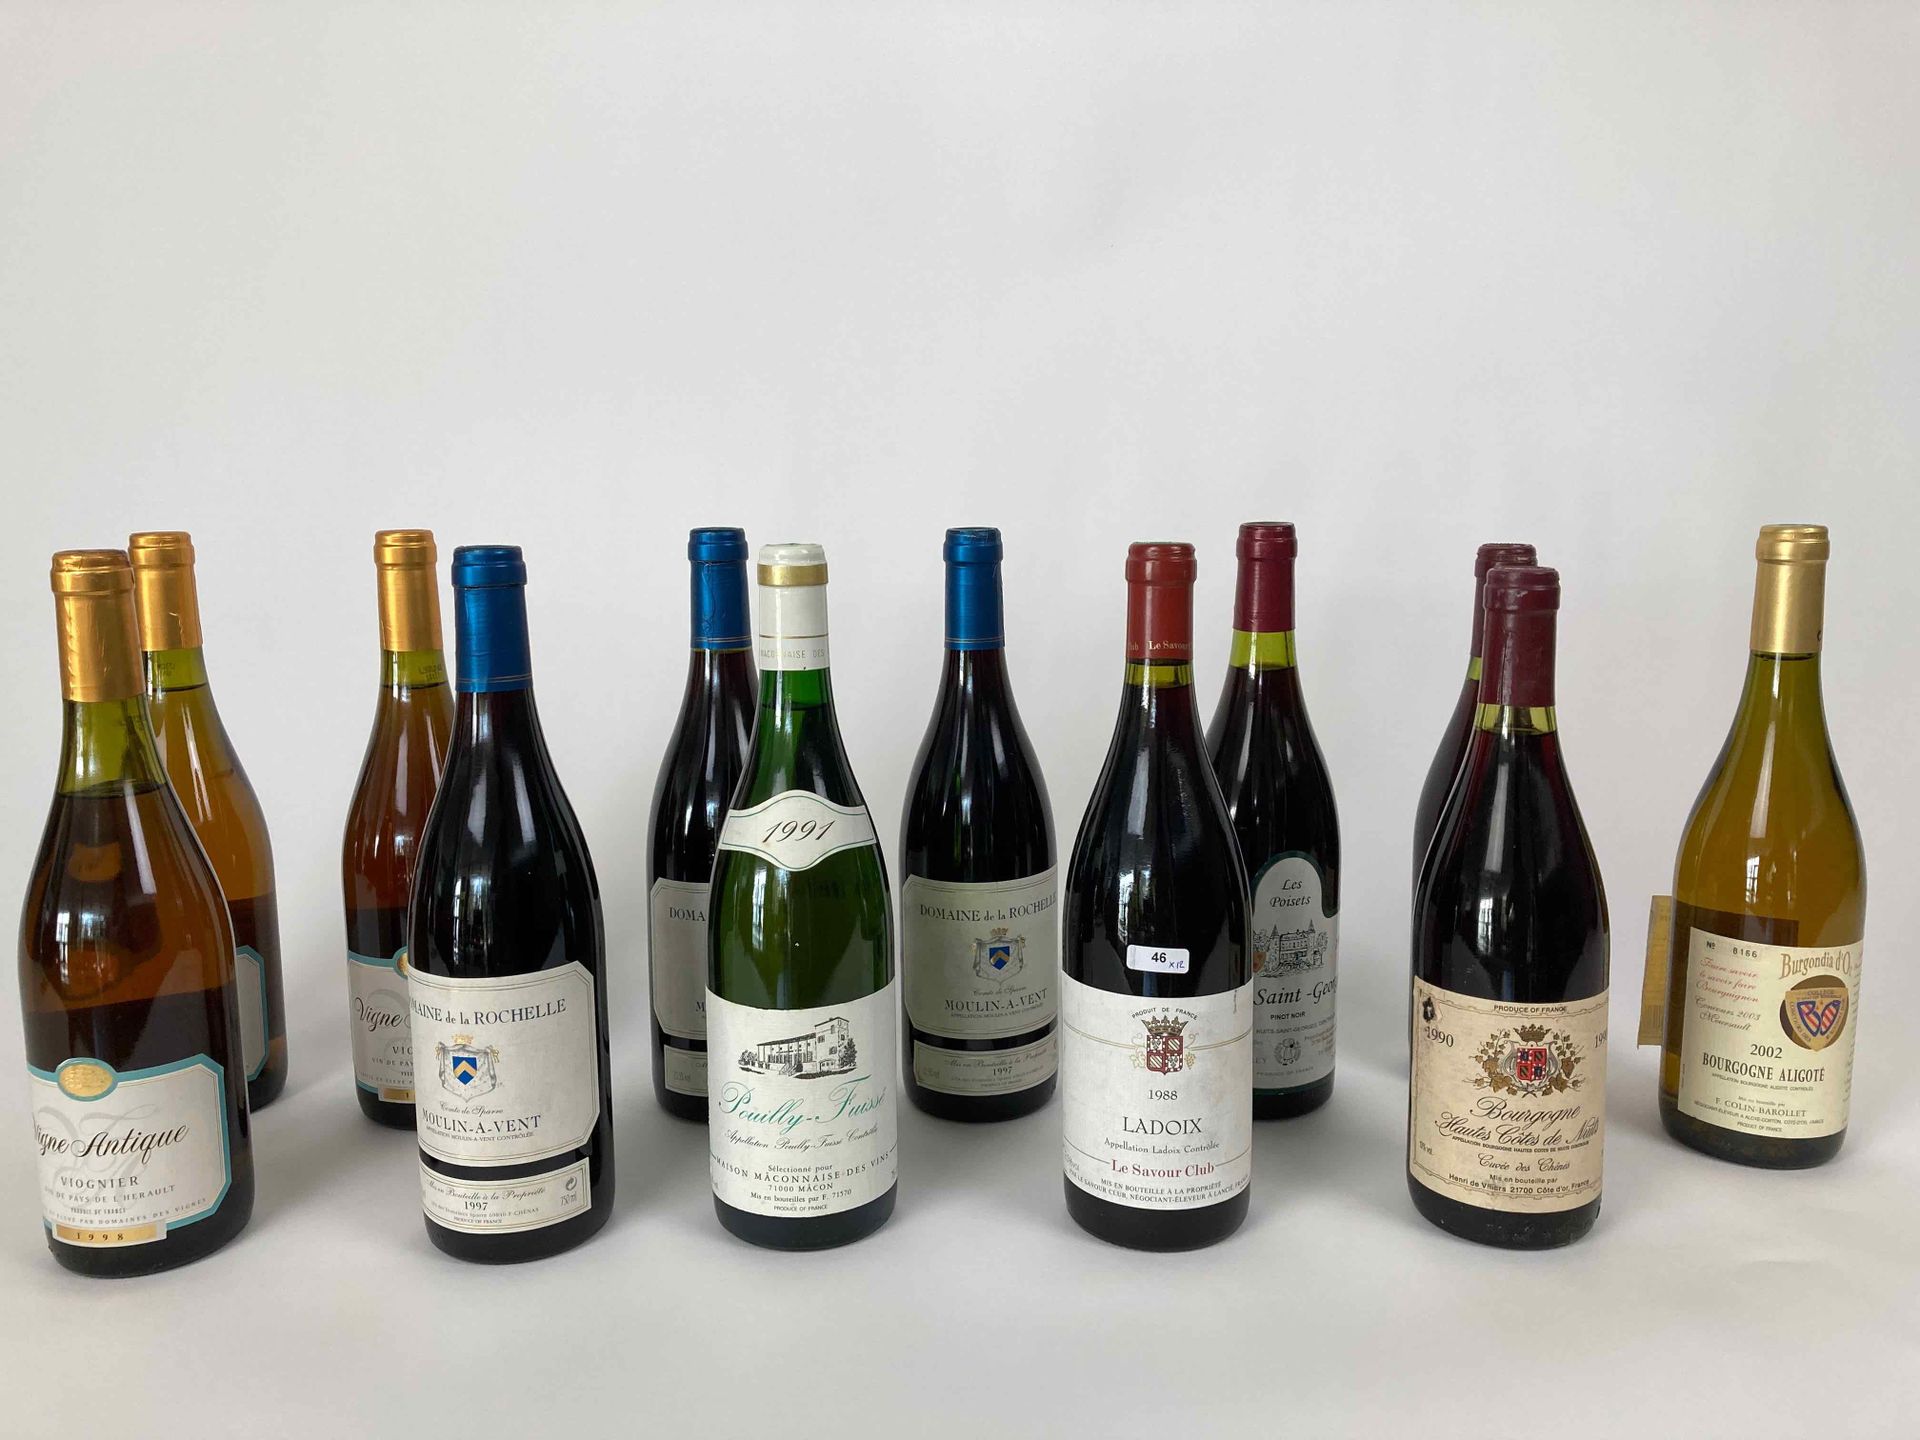 France Lot de douze bouteilles :

- BOURGOGNE (LADOIX), Le Savour Club 1988 (rou&hellip;